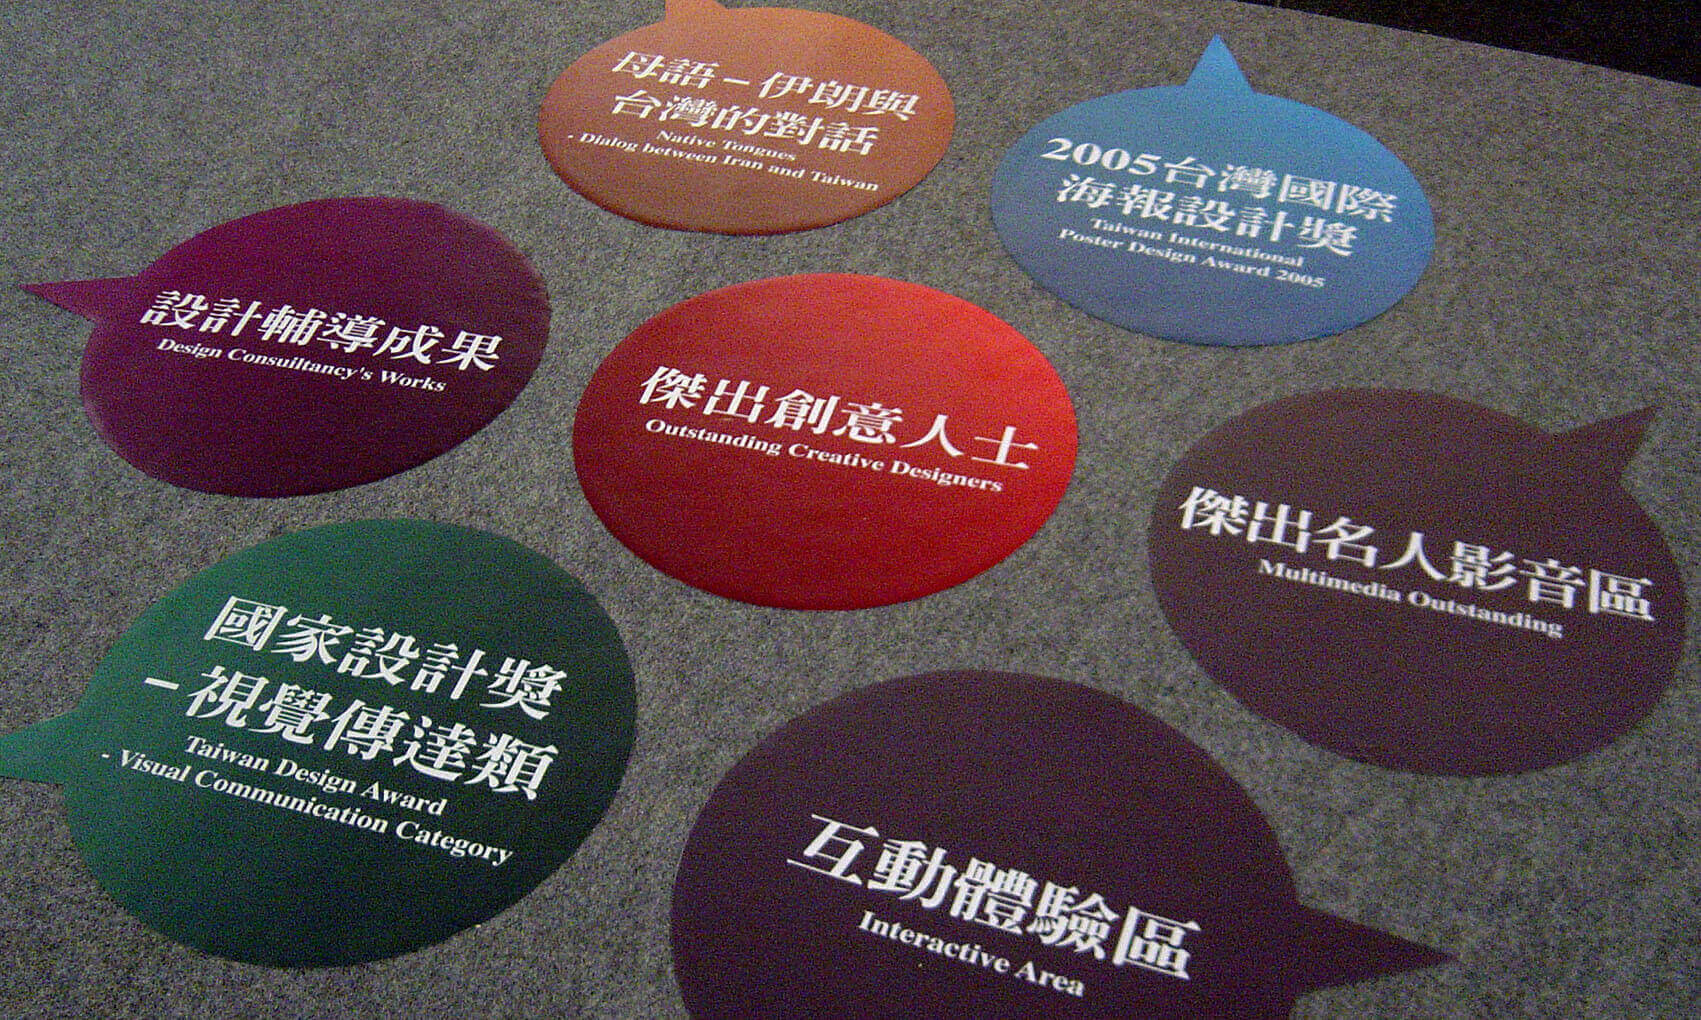 2006台灣設計博覽會-網站規範-4